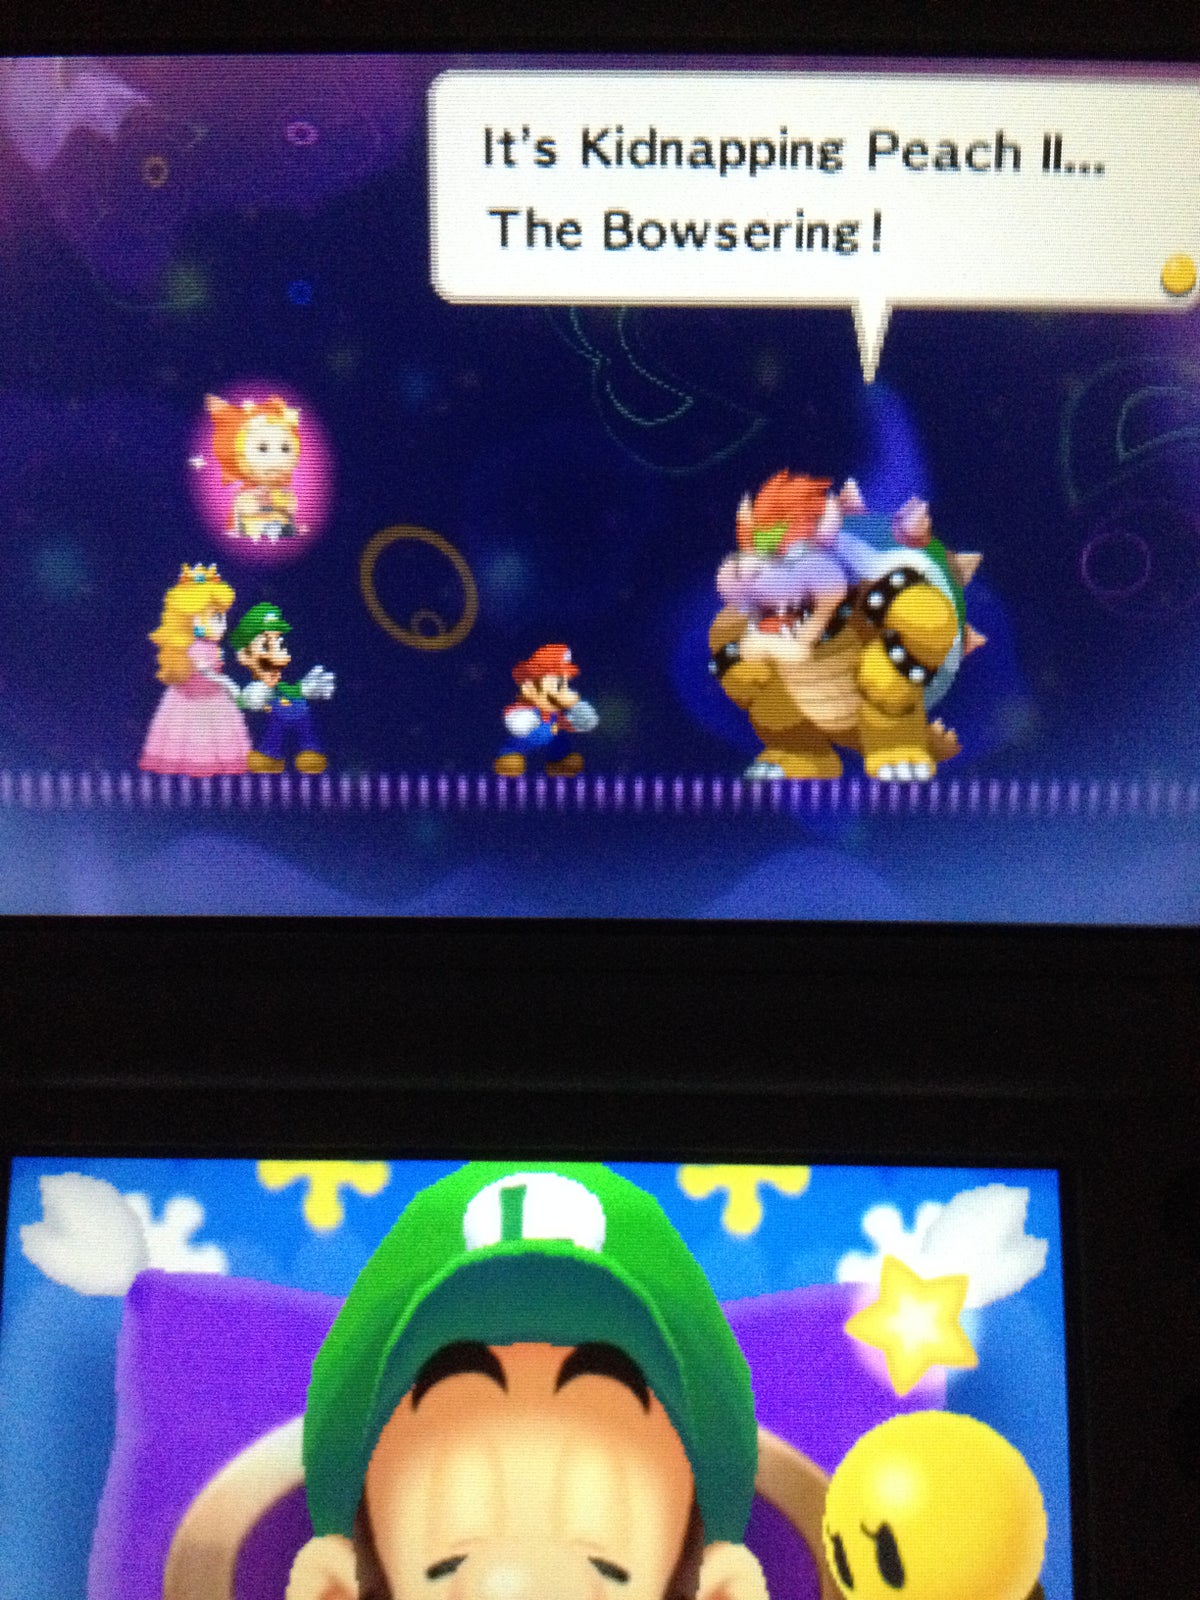 Mario Kart 7, Kirby, Yoshi